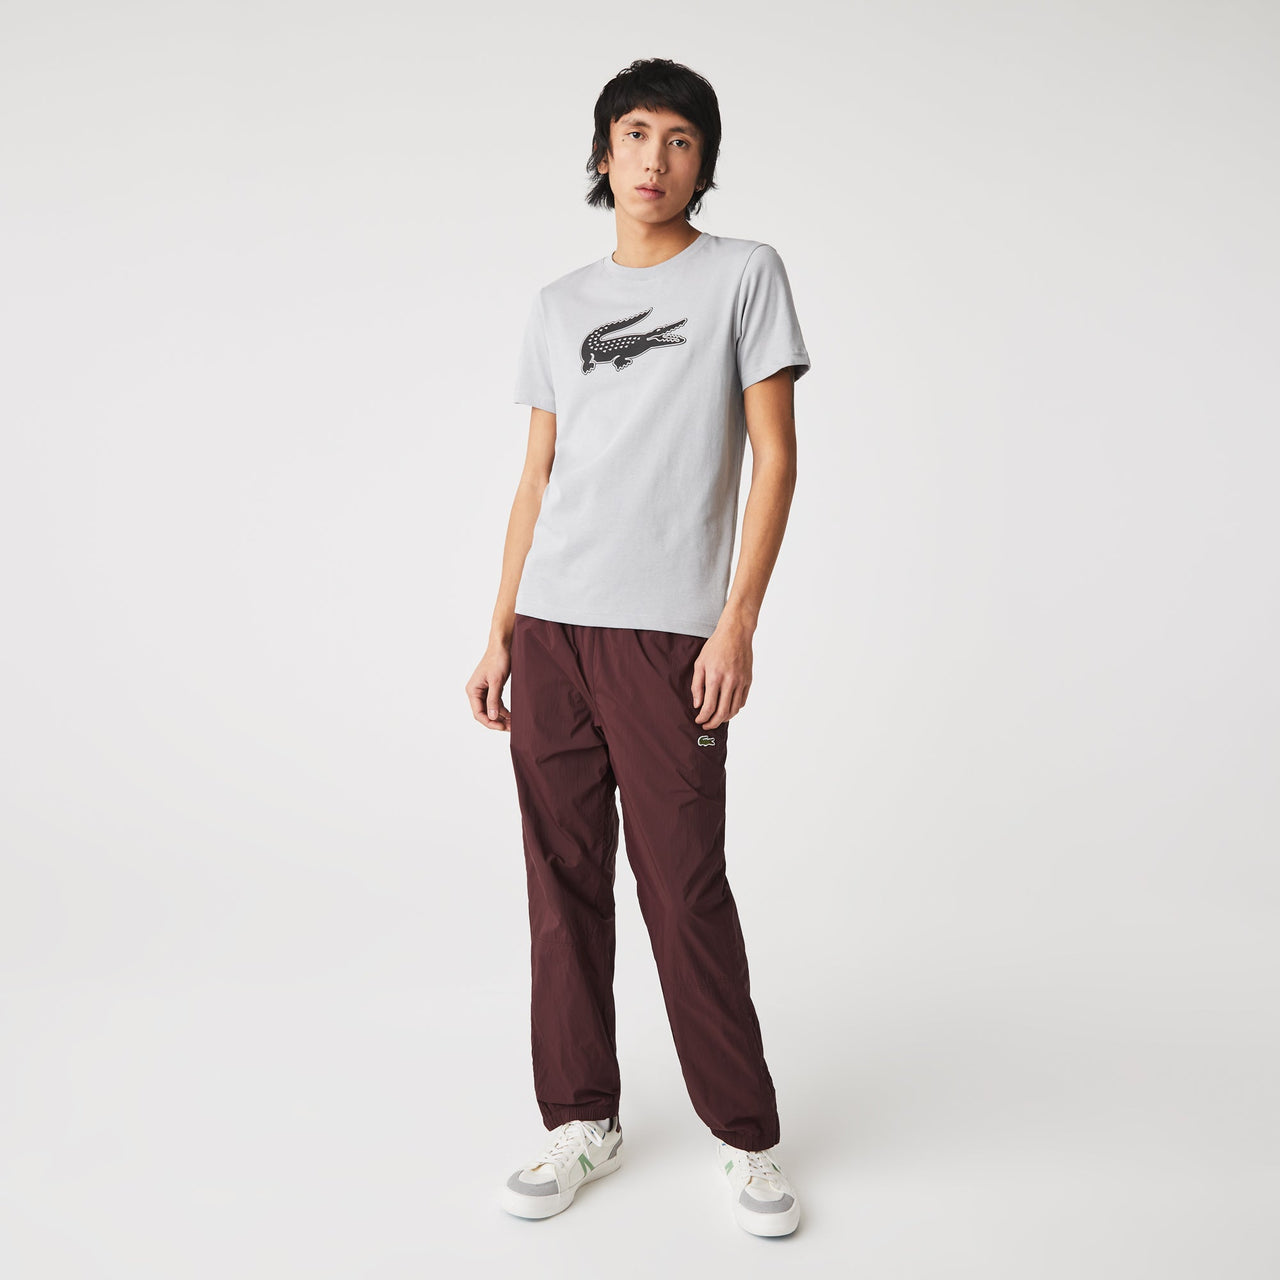 TH20421AV Camiseta lacoste th2042 - tee-shirt - Medina Menswear®